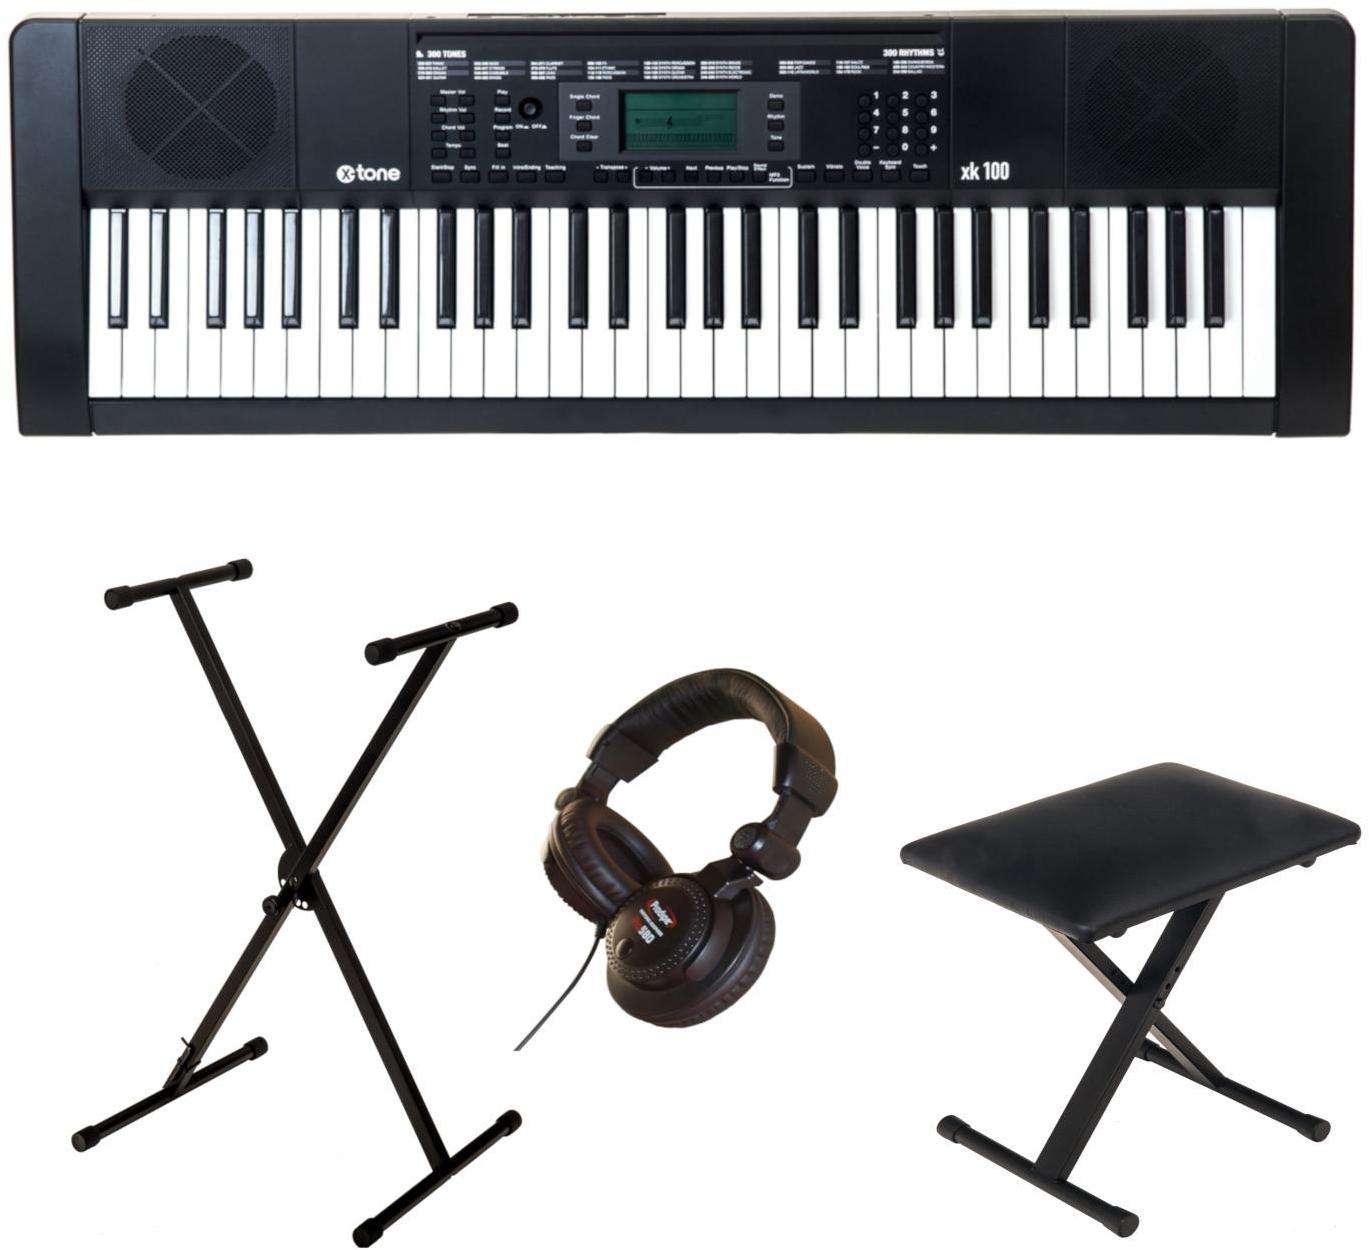 Klaviere set X-tone XK100 + stand + siège + casque PRO580 + xh 6100 Stand Clavier En Kit